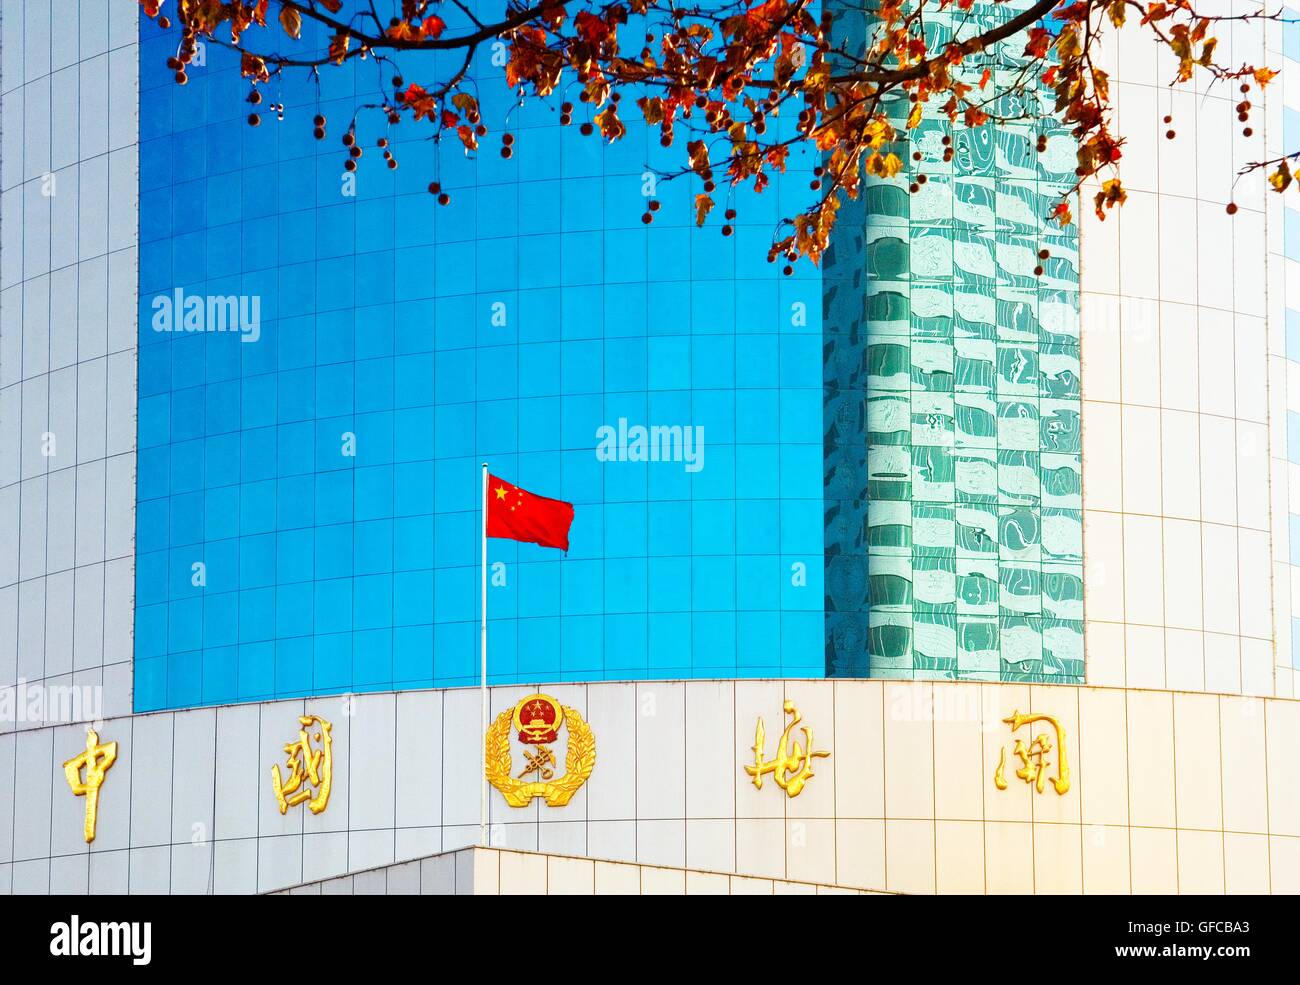 Chinesische Fahne und reflektierendem Glas der neuen port authority Zoll Gebäude im Zentrum der Stadt Yantai, Provinz Shandong, China Stockfoto